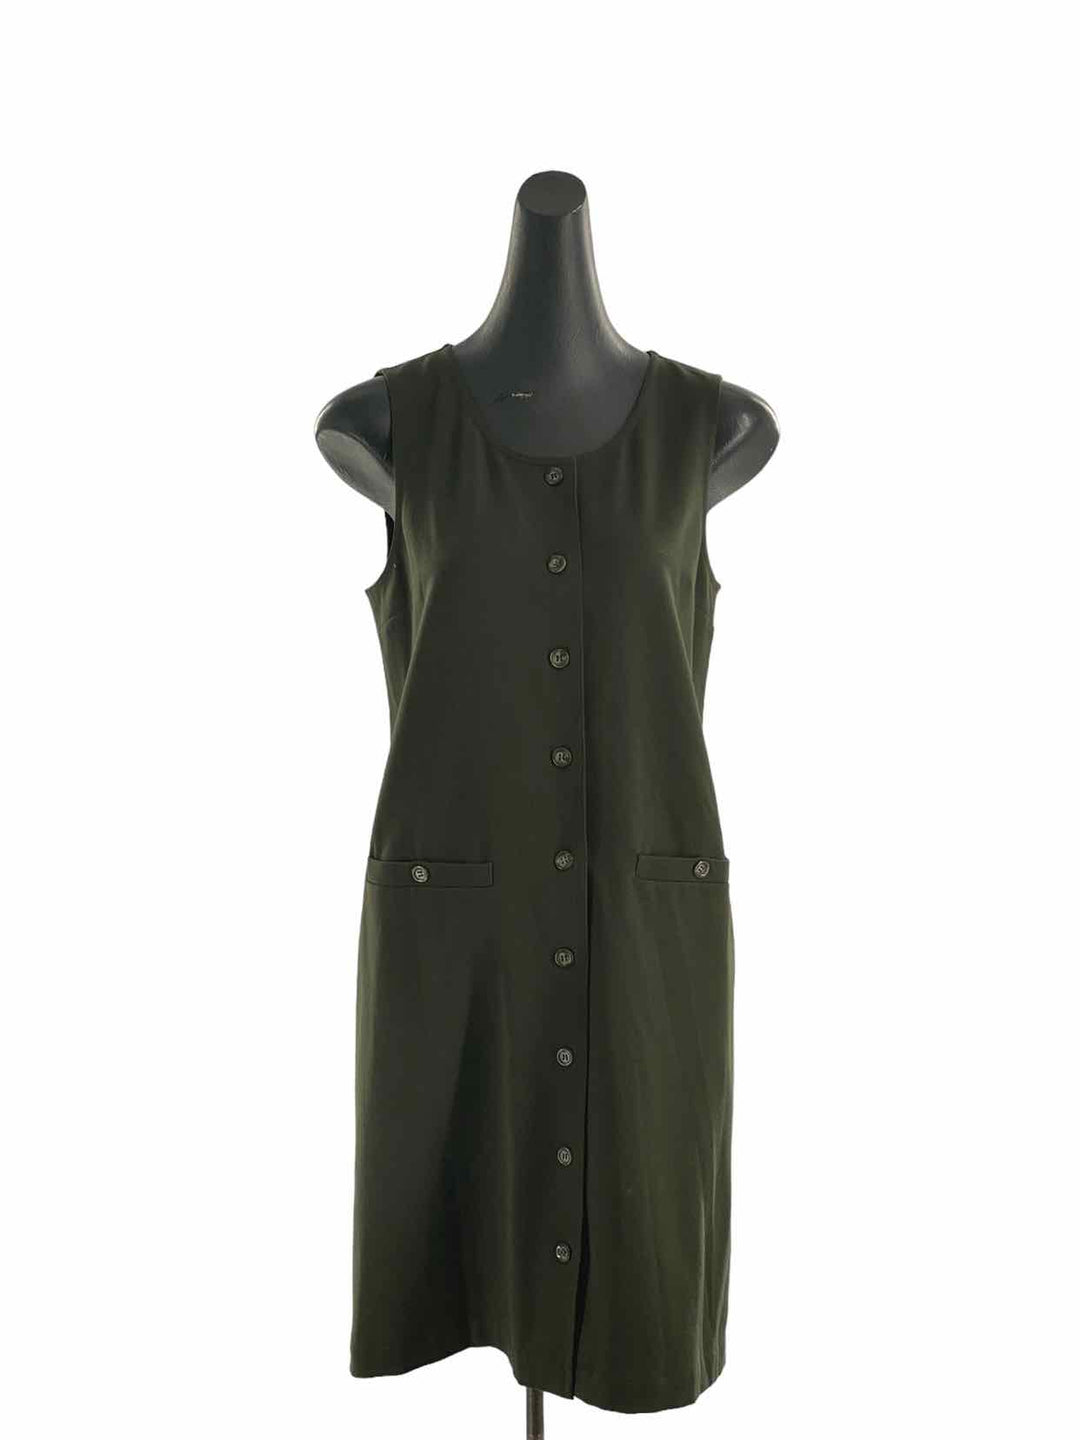 Talbots Size 6 Green Dress